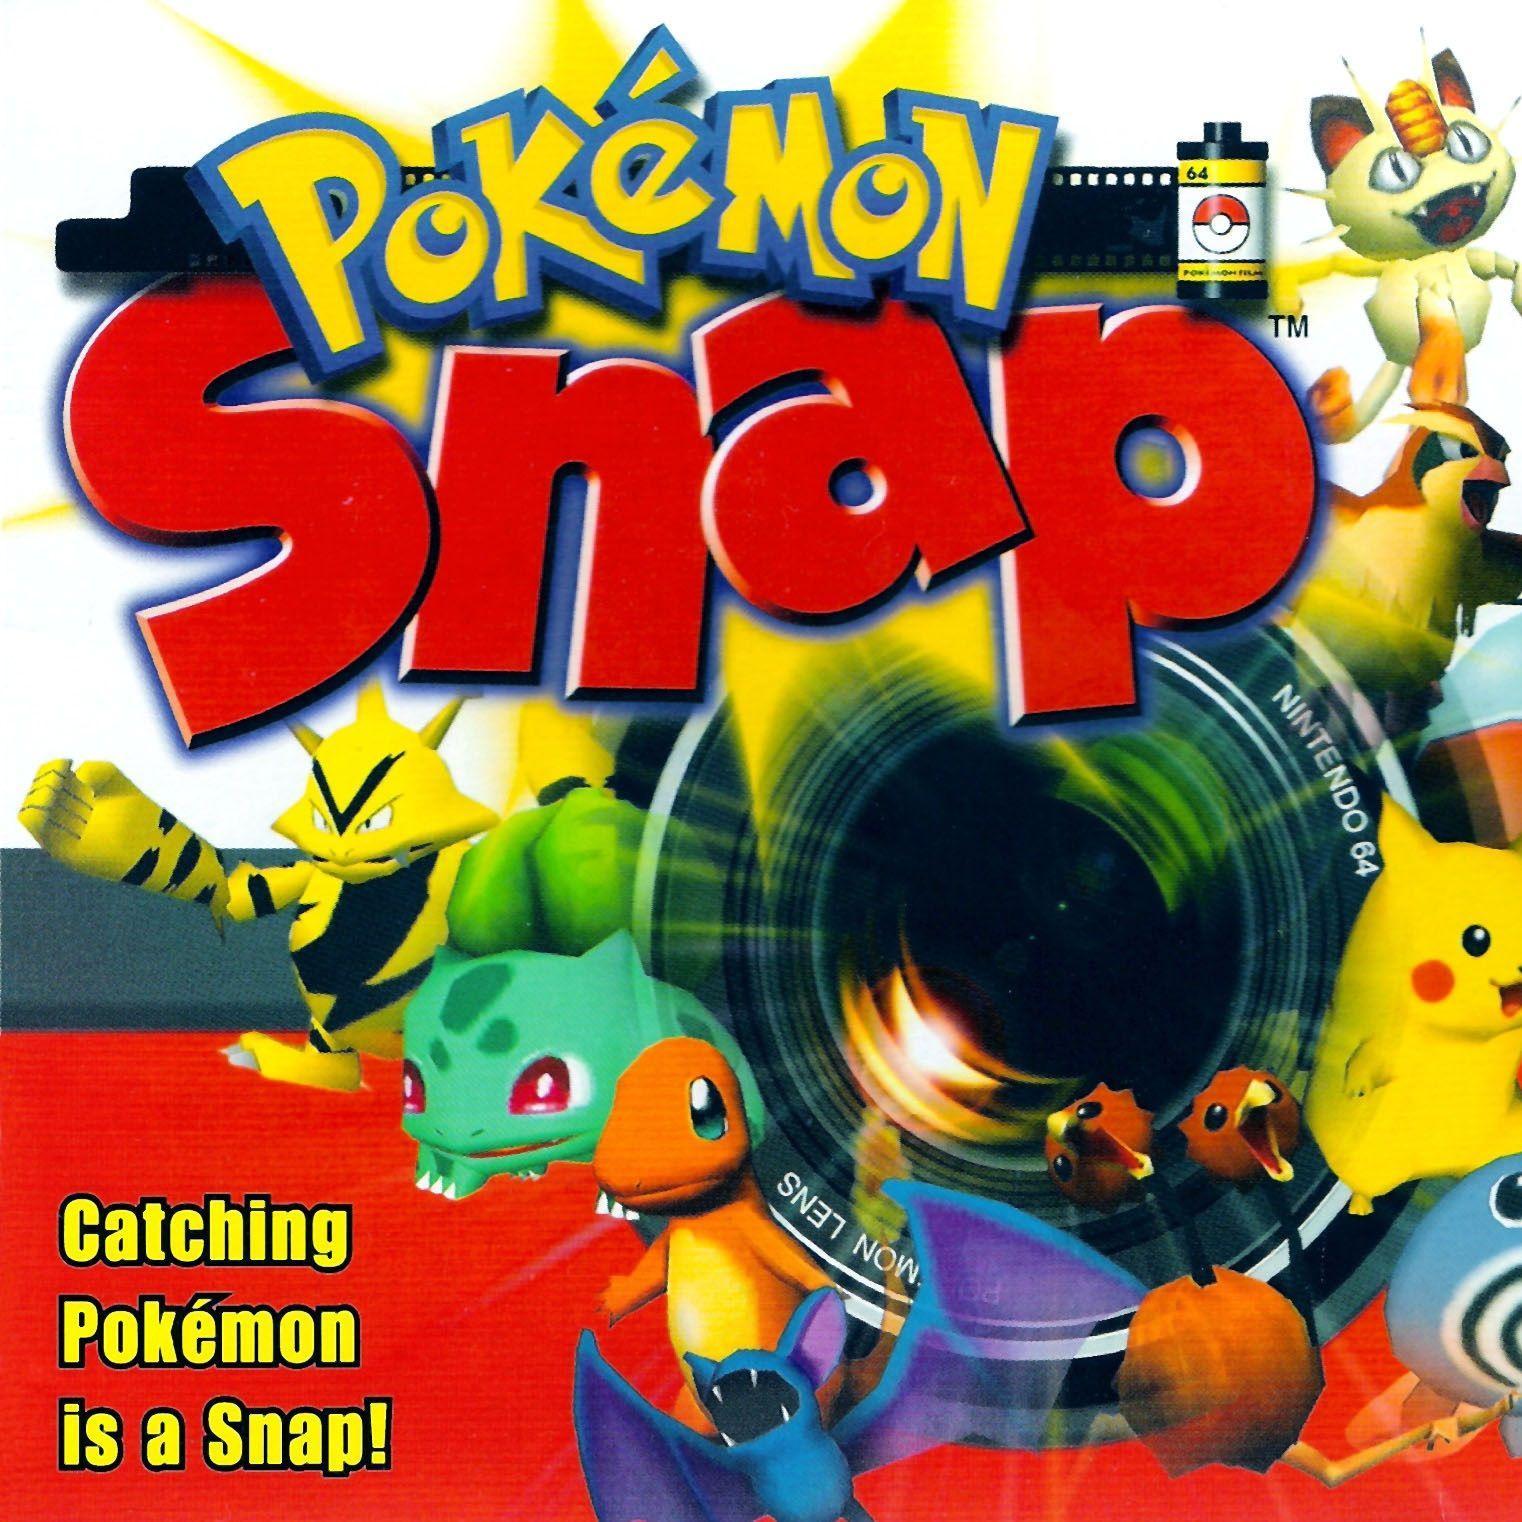 Pokémon Snap n64 download